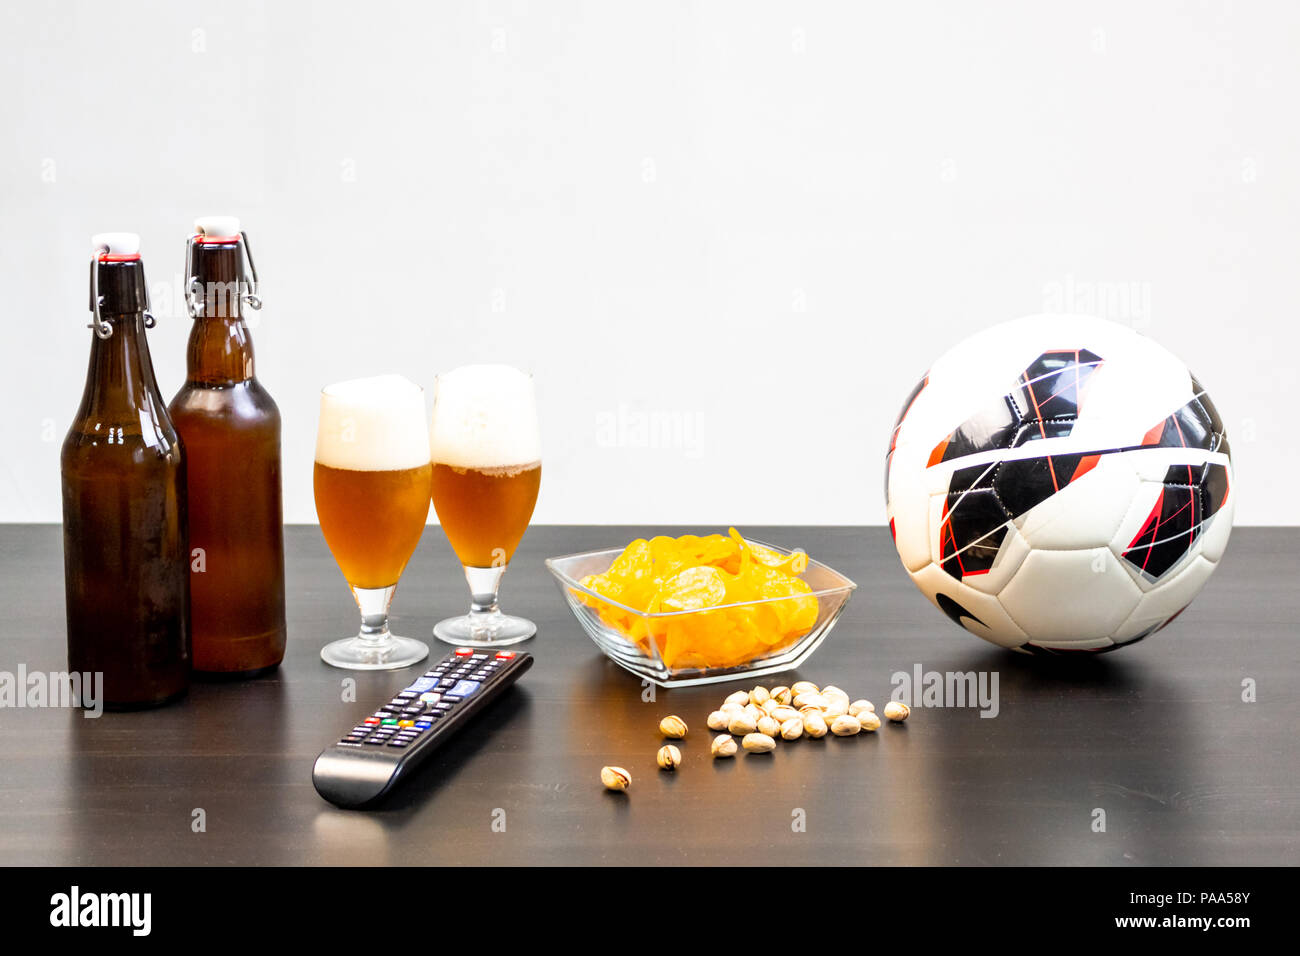 Les gens prêts à regarder le football à la télévision avec de la bière. Il y a la bière sur la table, la bille, TV, des collations. Bière artisanale. Fond clair. Banque D'Images